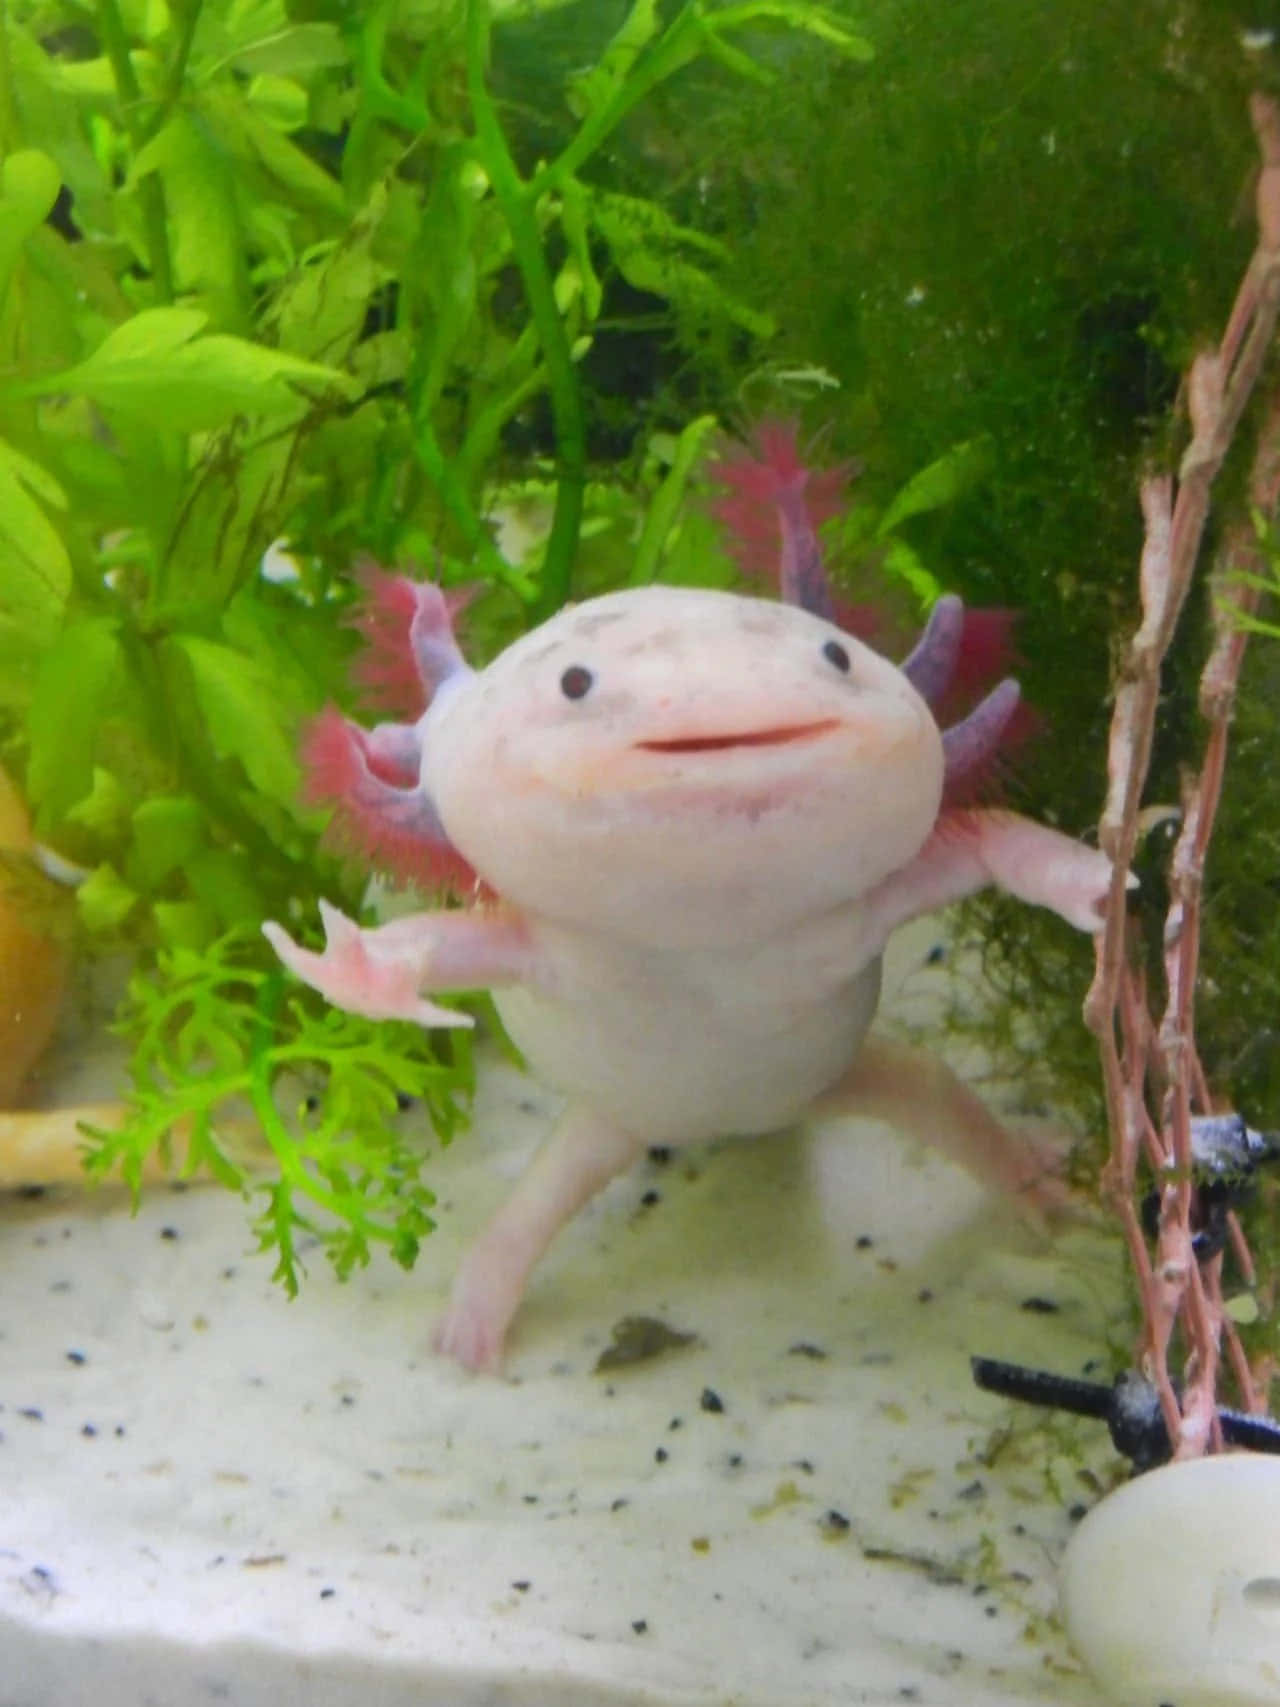 A Majestic Axolotl in Its Natural Habitat